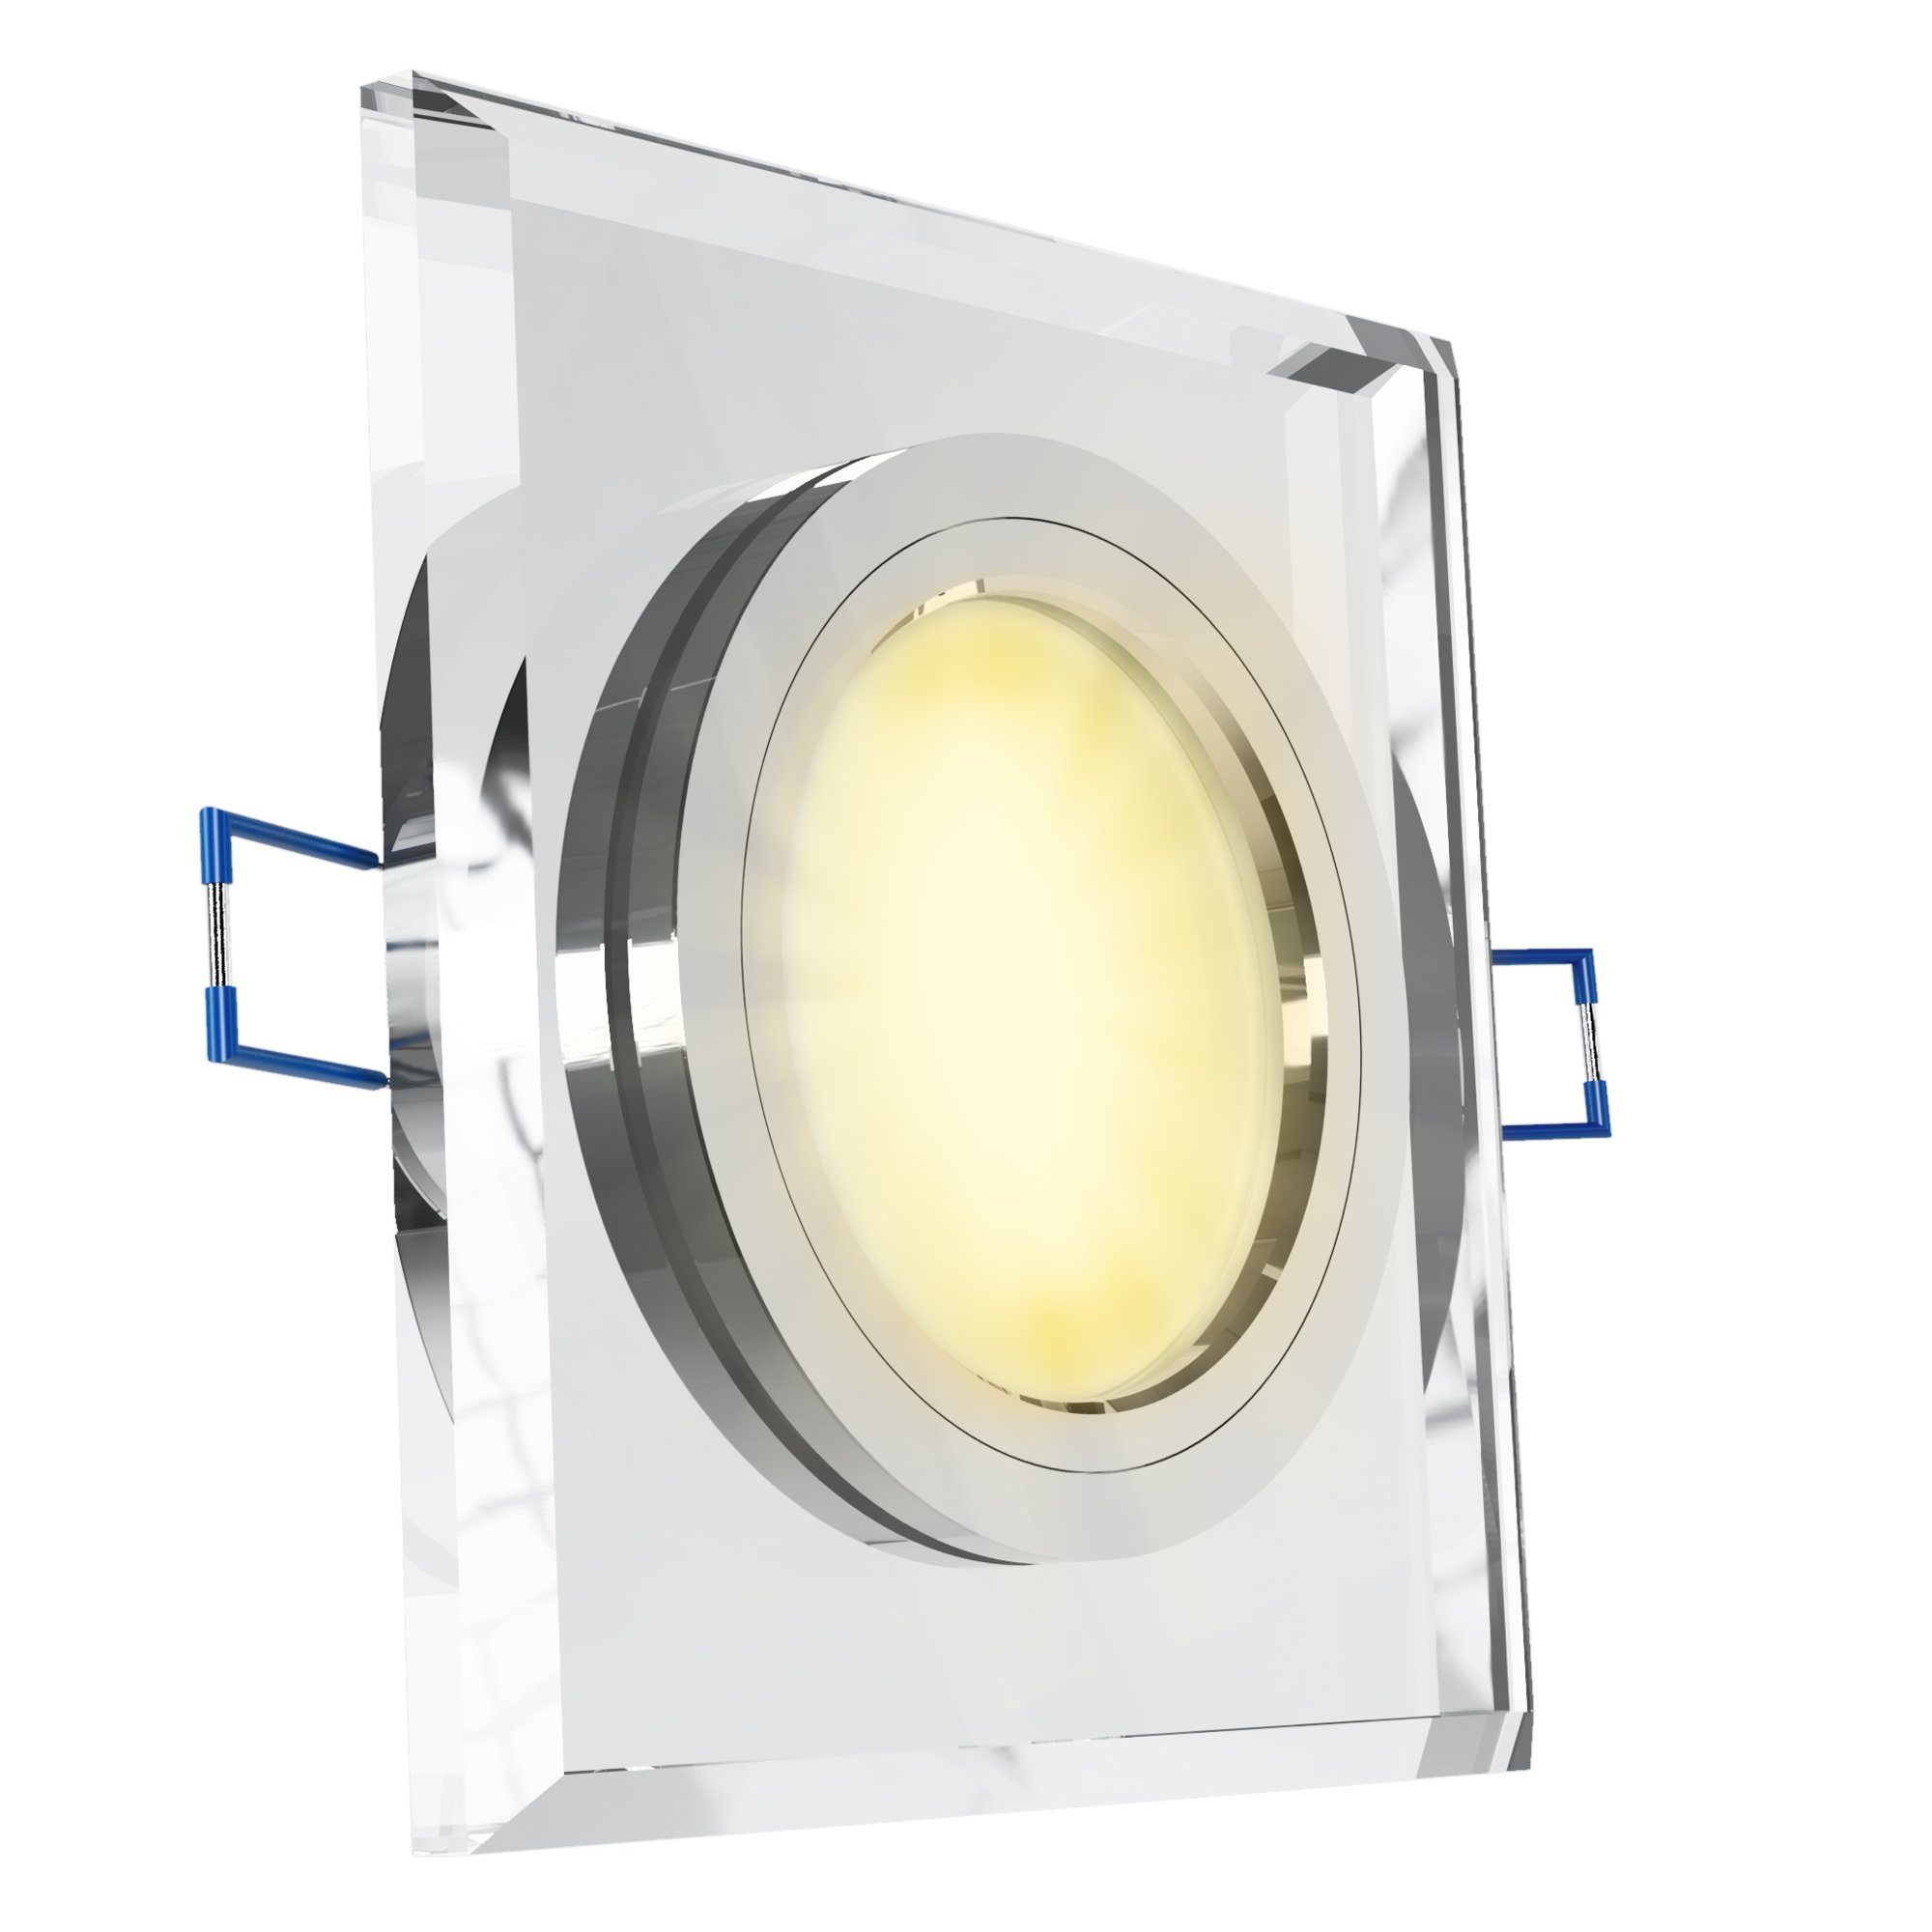 SSC-LUXon LED Einbaustrahler Flacher Design Einbaustrahler aus Glas quadratisch klar spiegelnd, Warmweiß